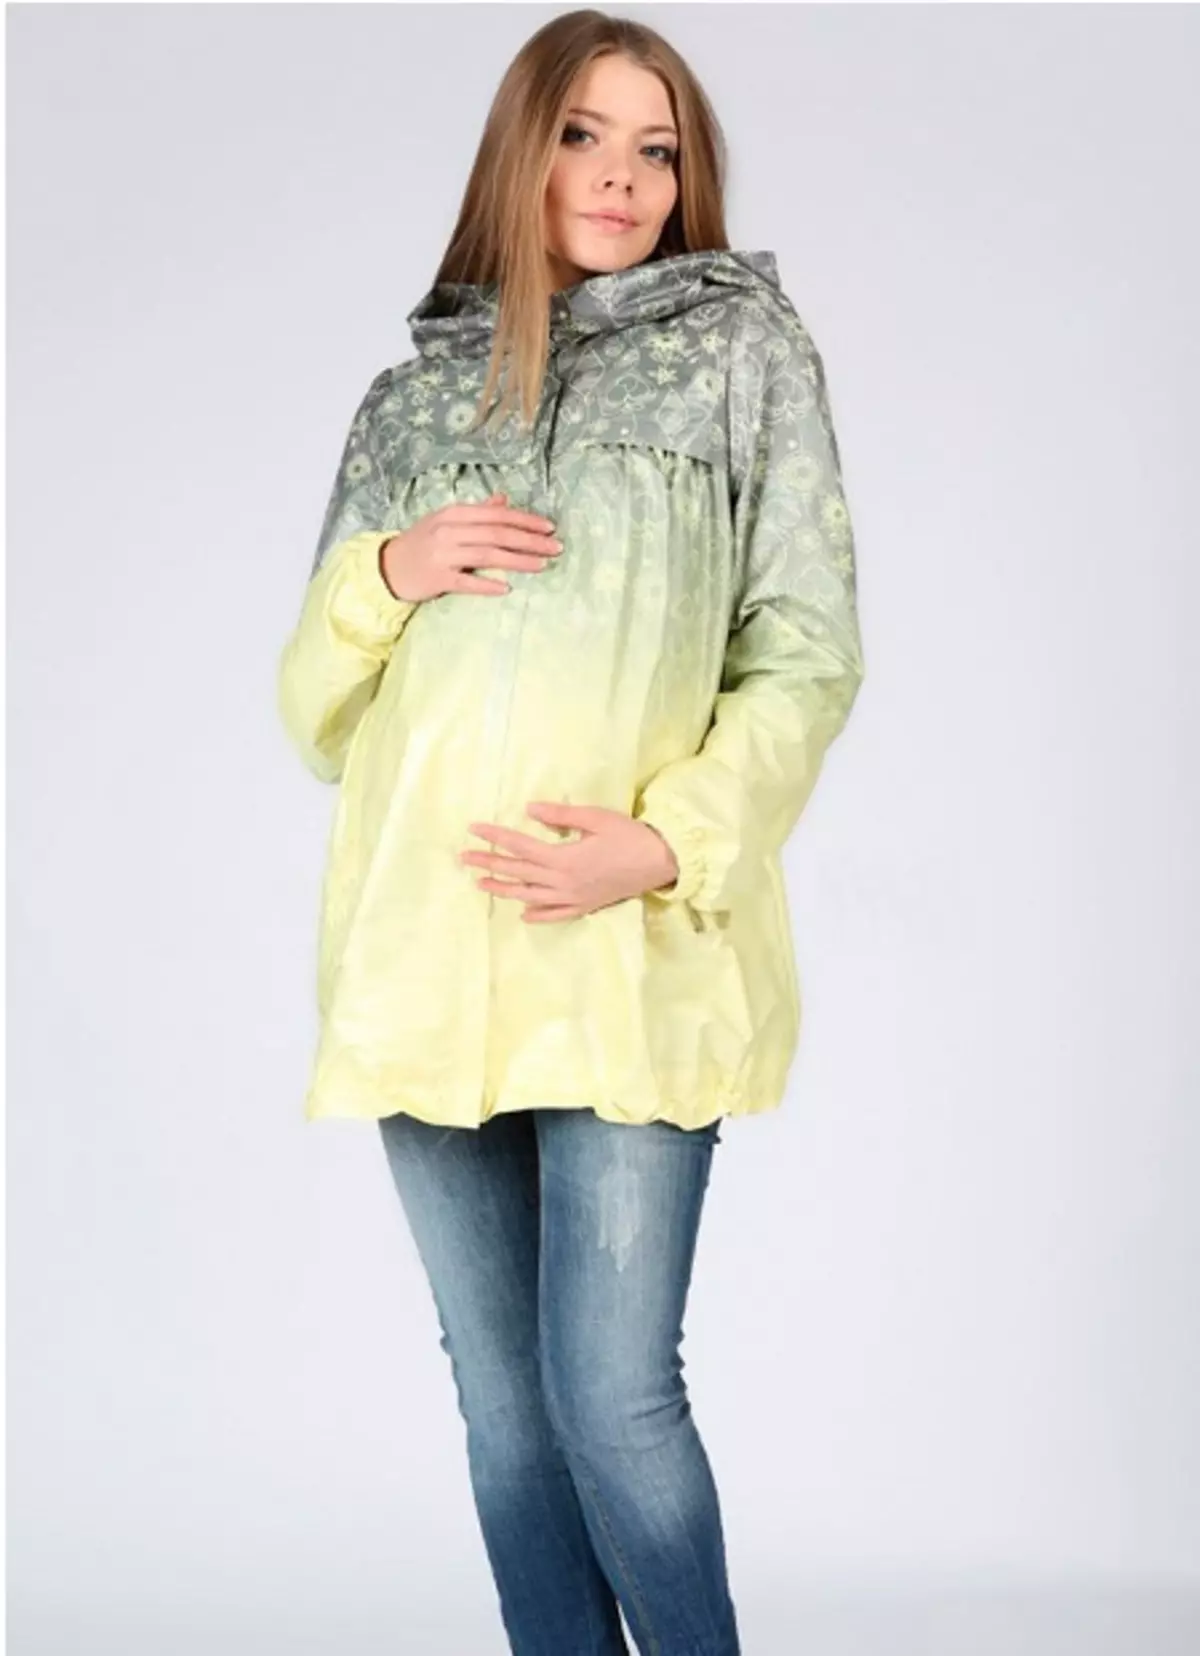 Mantel për gratë shtatzëna (40 foto): pallto dhe mantel dhe xhaketë mantel nga Adela, HM, modres dhe mama e ëmbël 359_3